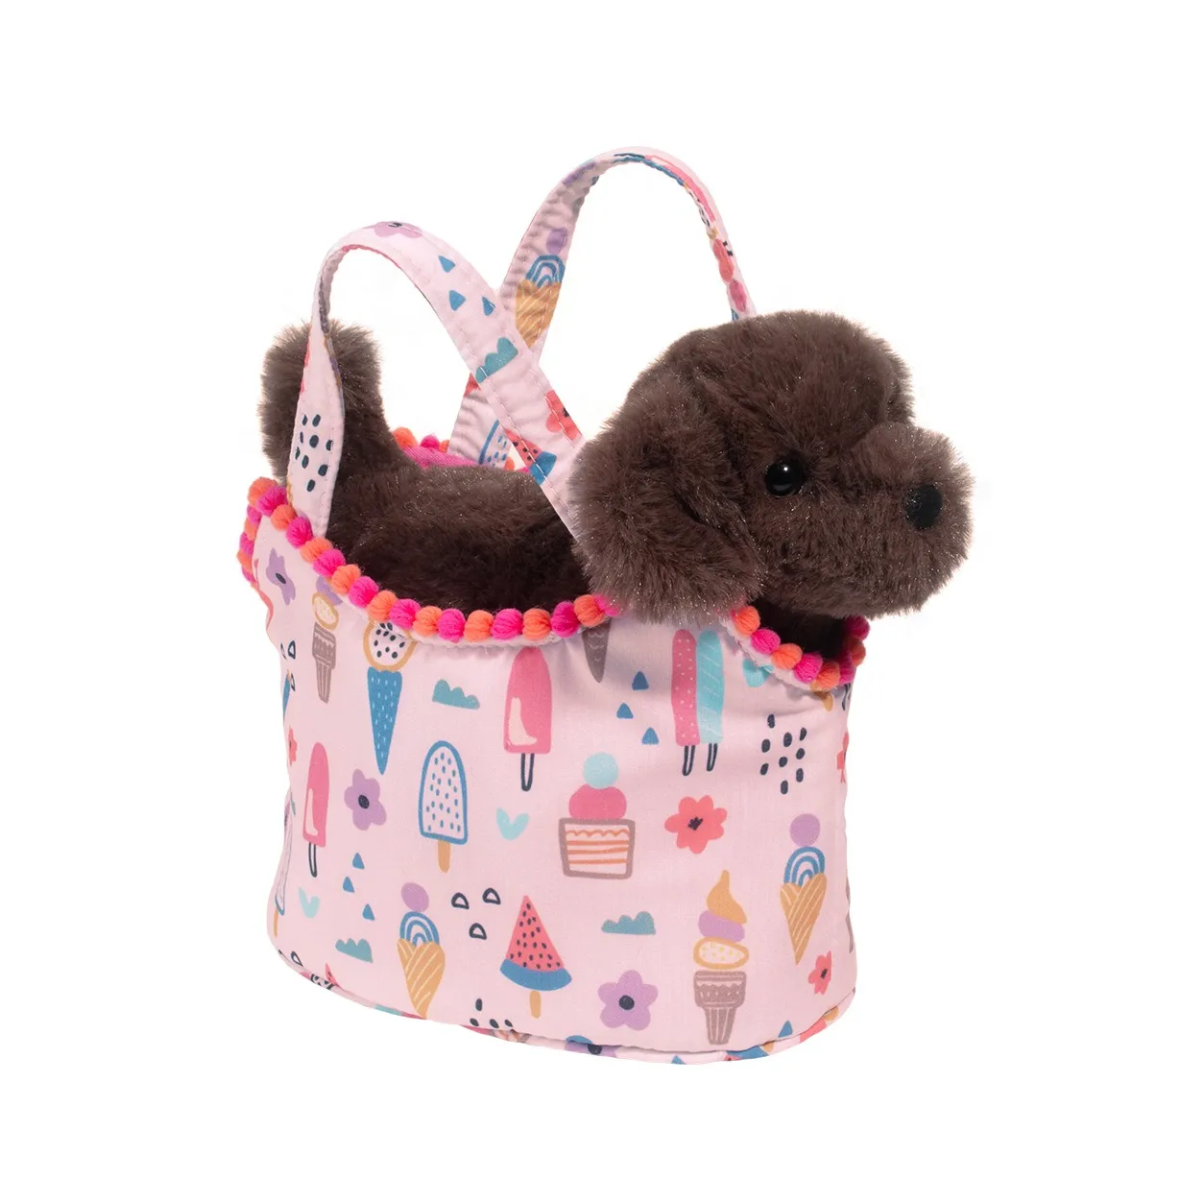 Girls dog purse | Dog purse, Girl and dog, Puppy purse